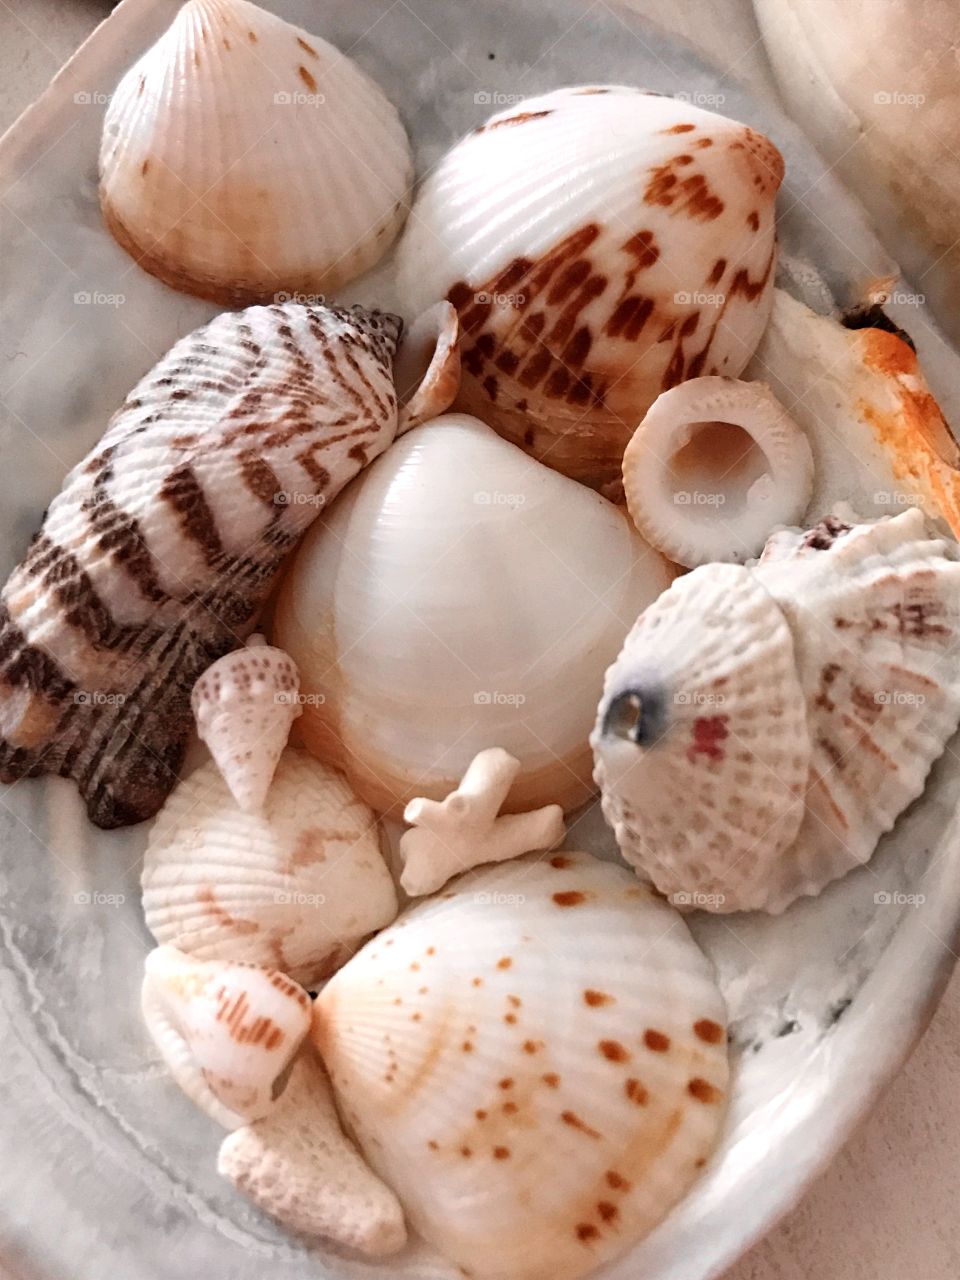 Seashell findings